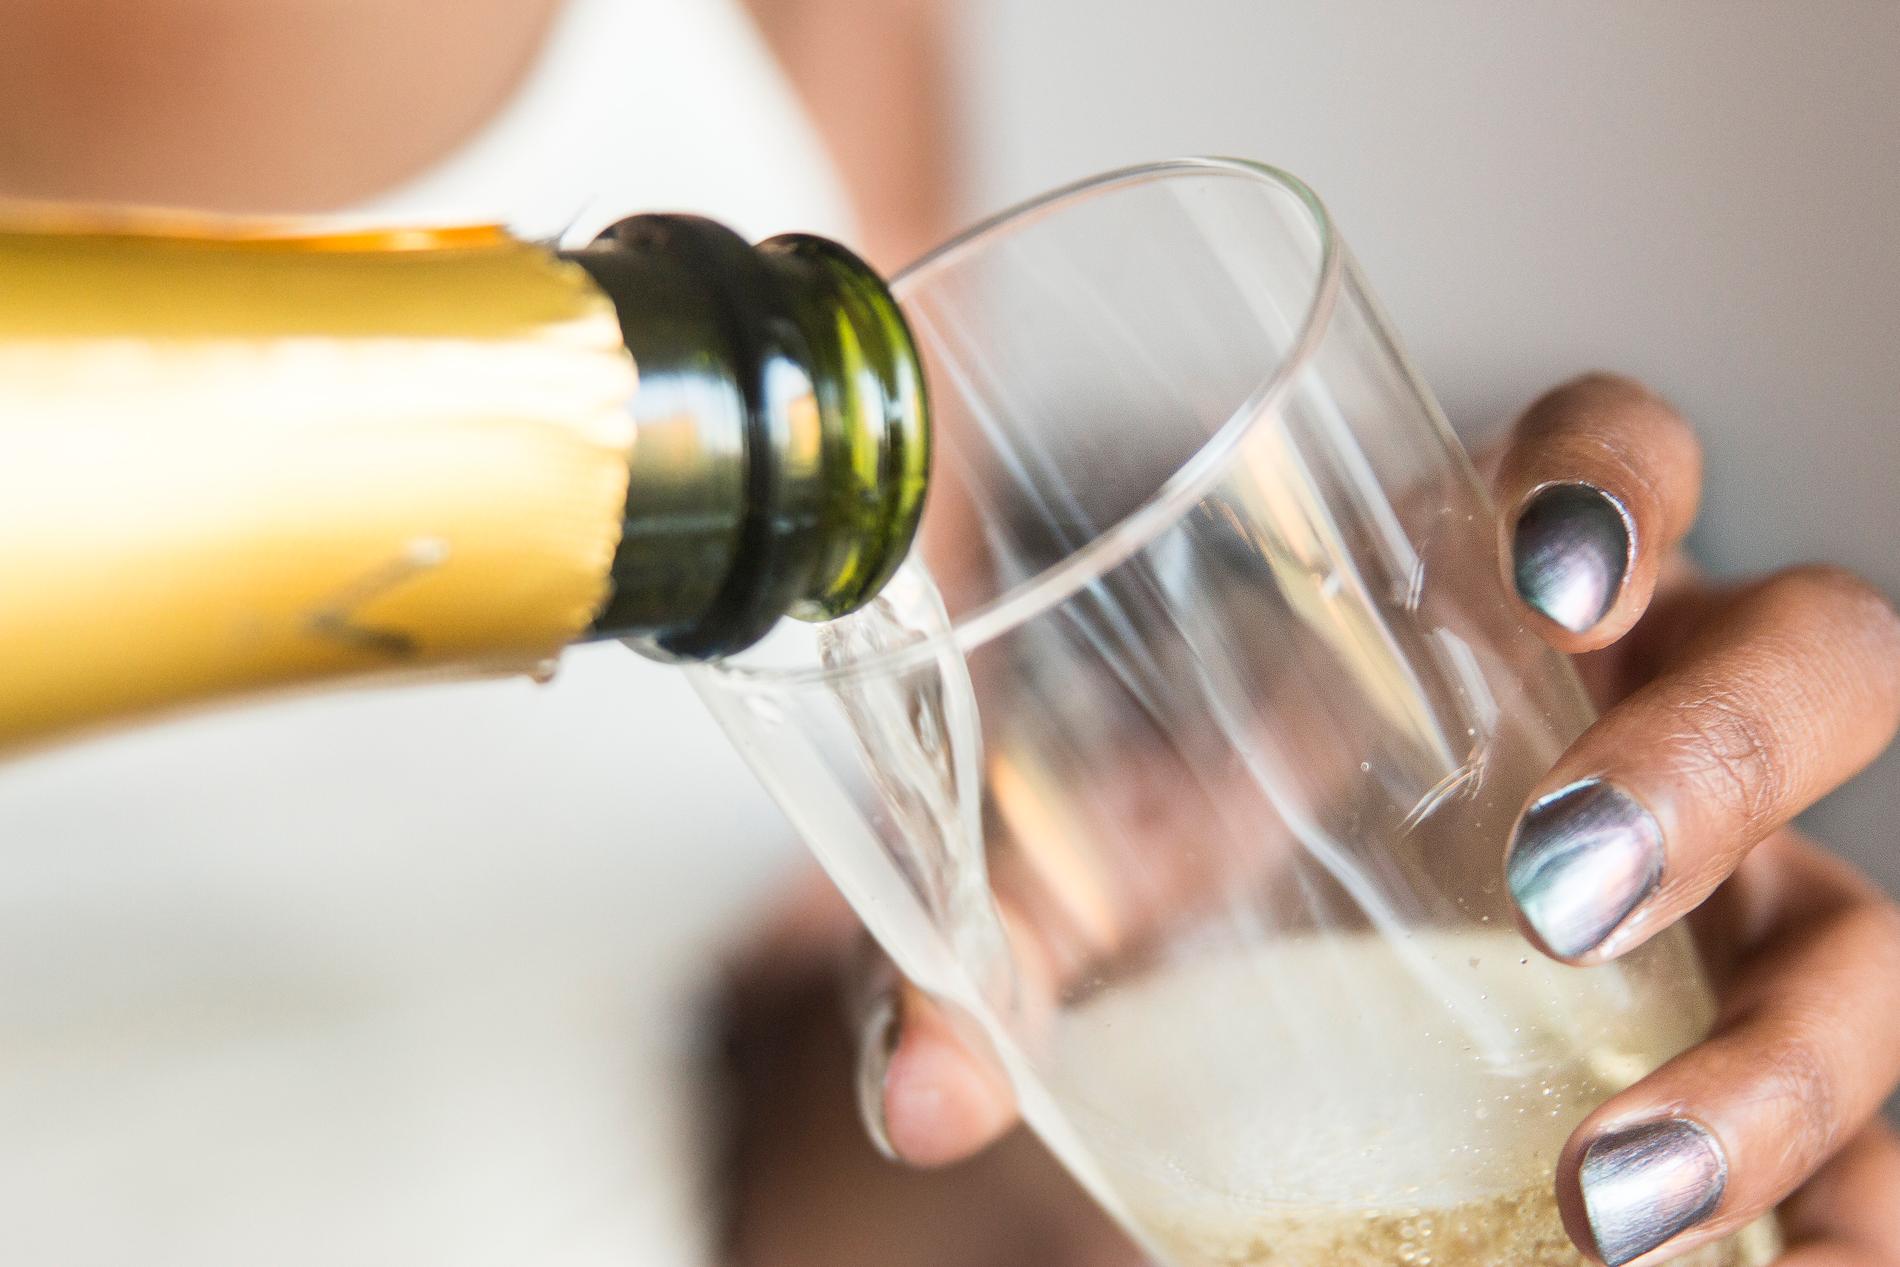 År av dåliga skördar kombinerat med en ökad efterfrågan leder till högre champagnepriser. Arkivbild.